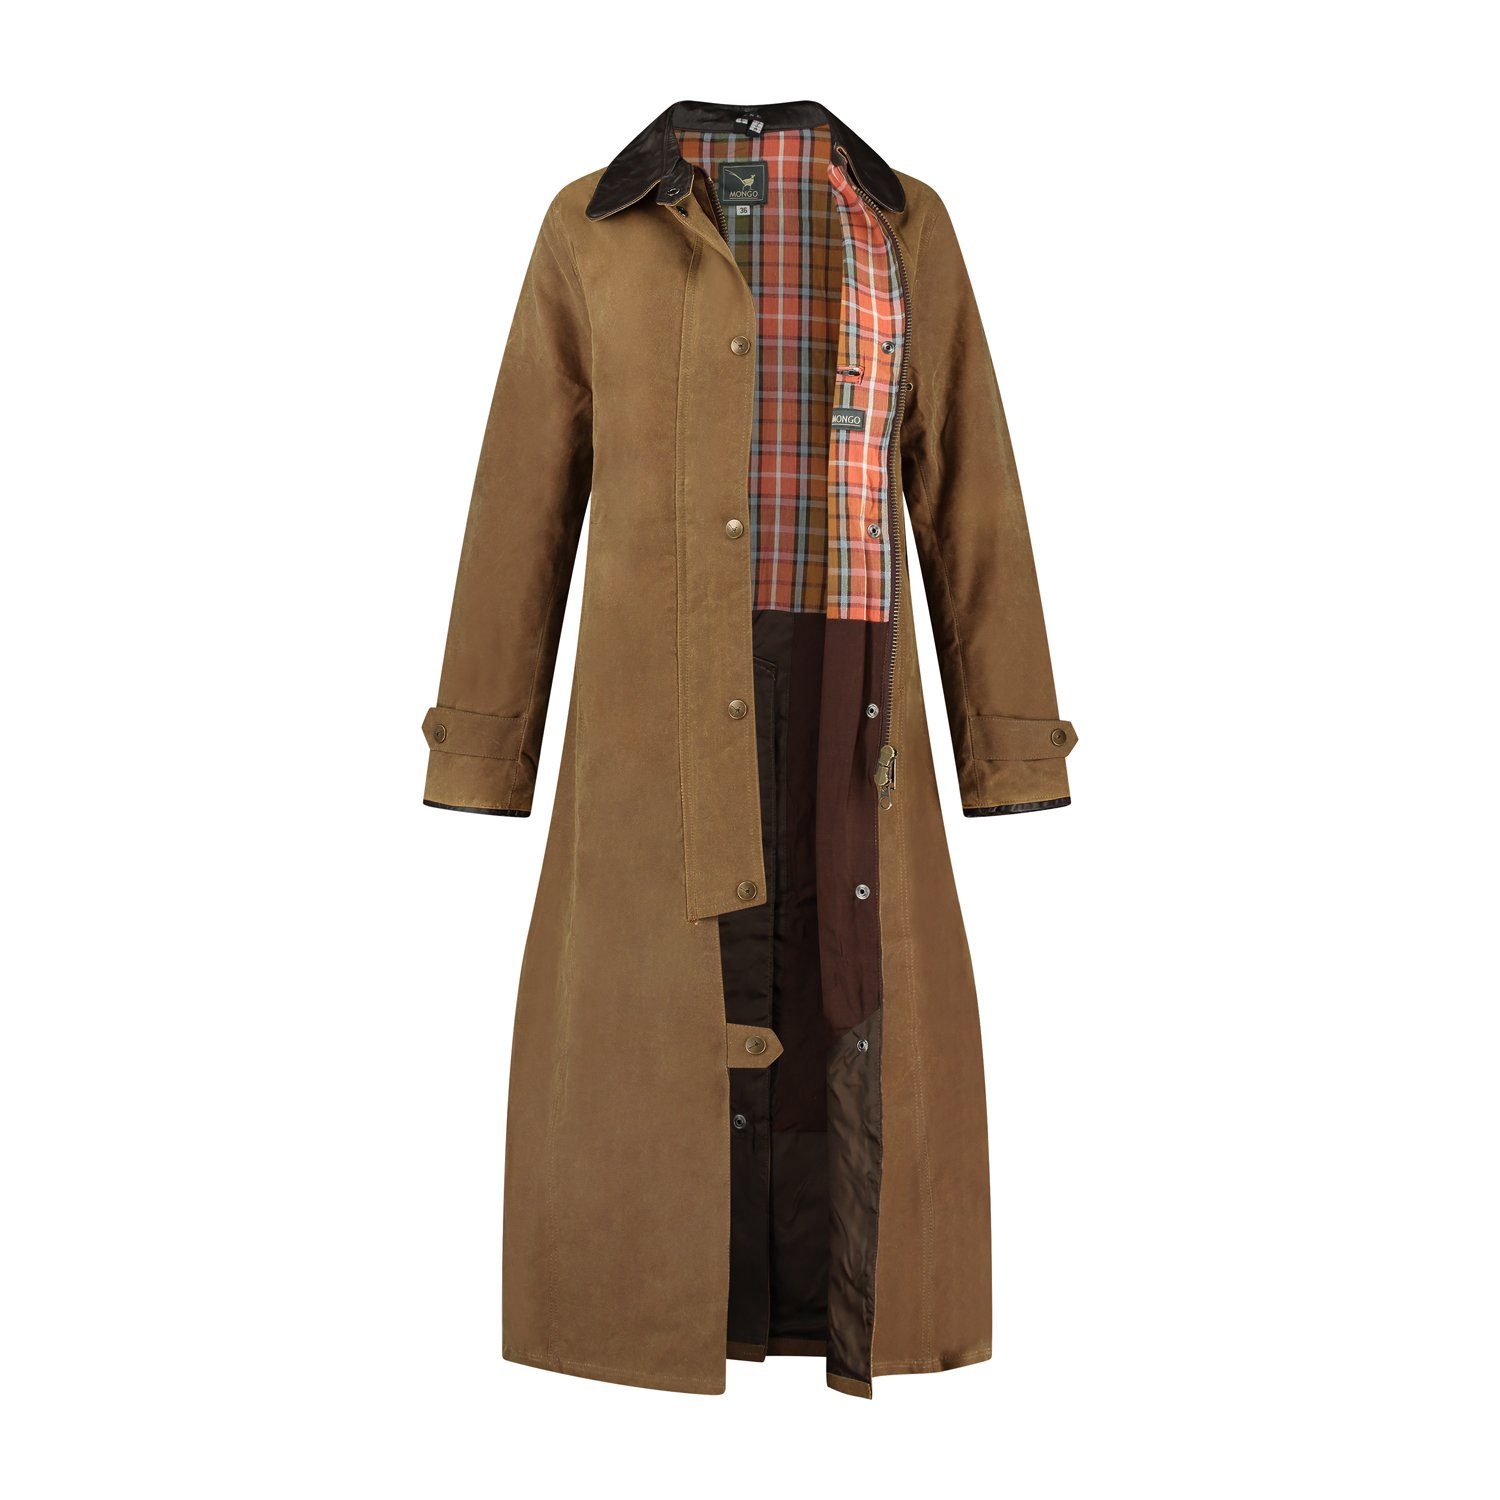 MGO Outdoorjacke und winddicht Sandstein Long Wax Lady Jane wasserabweisend Coat